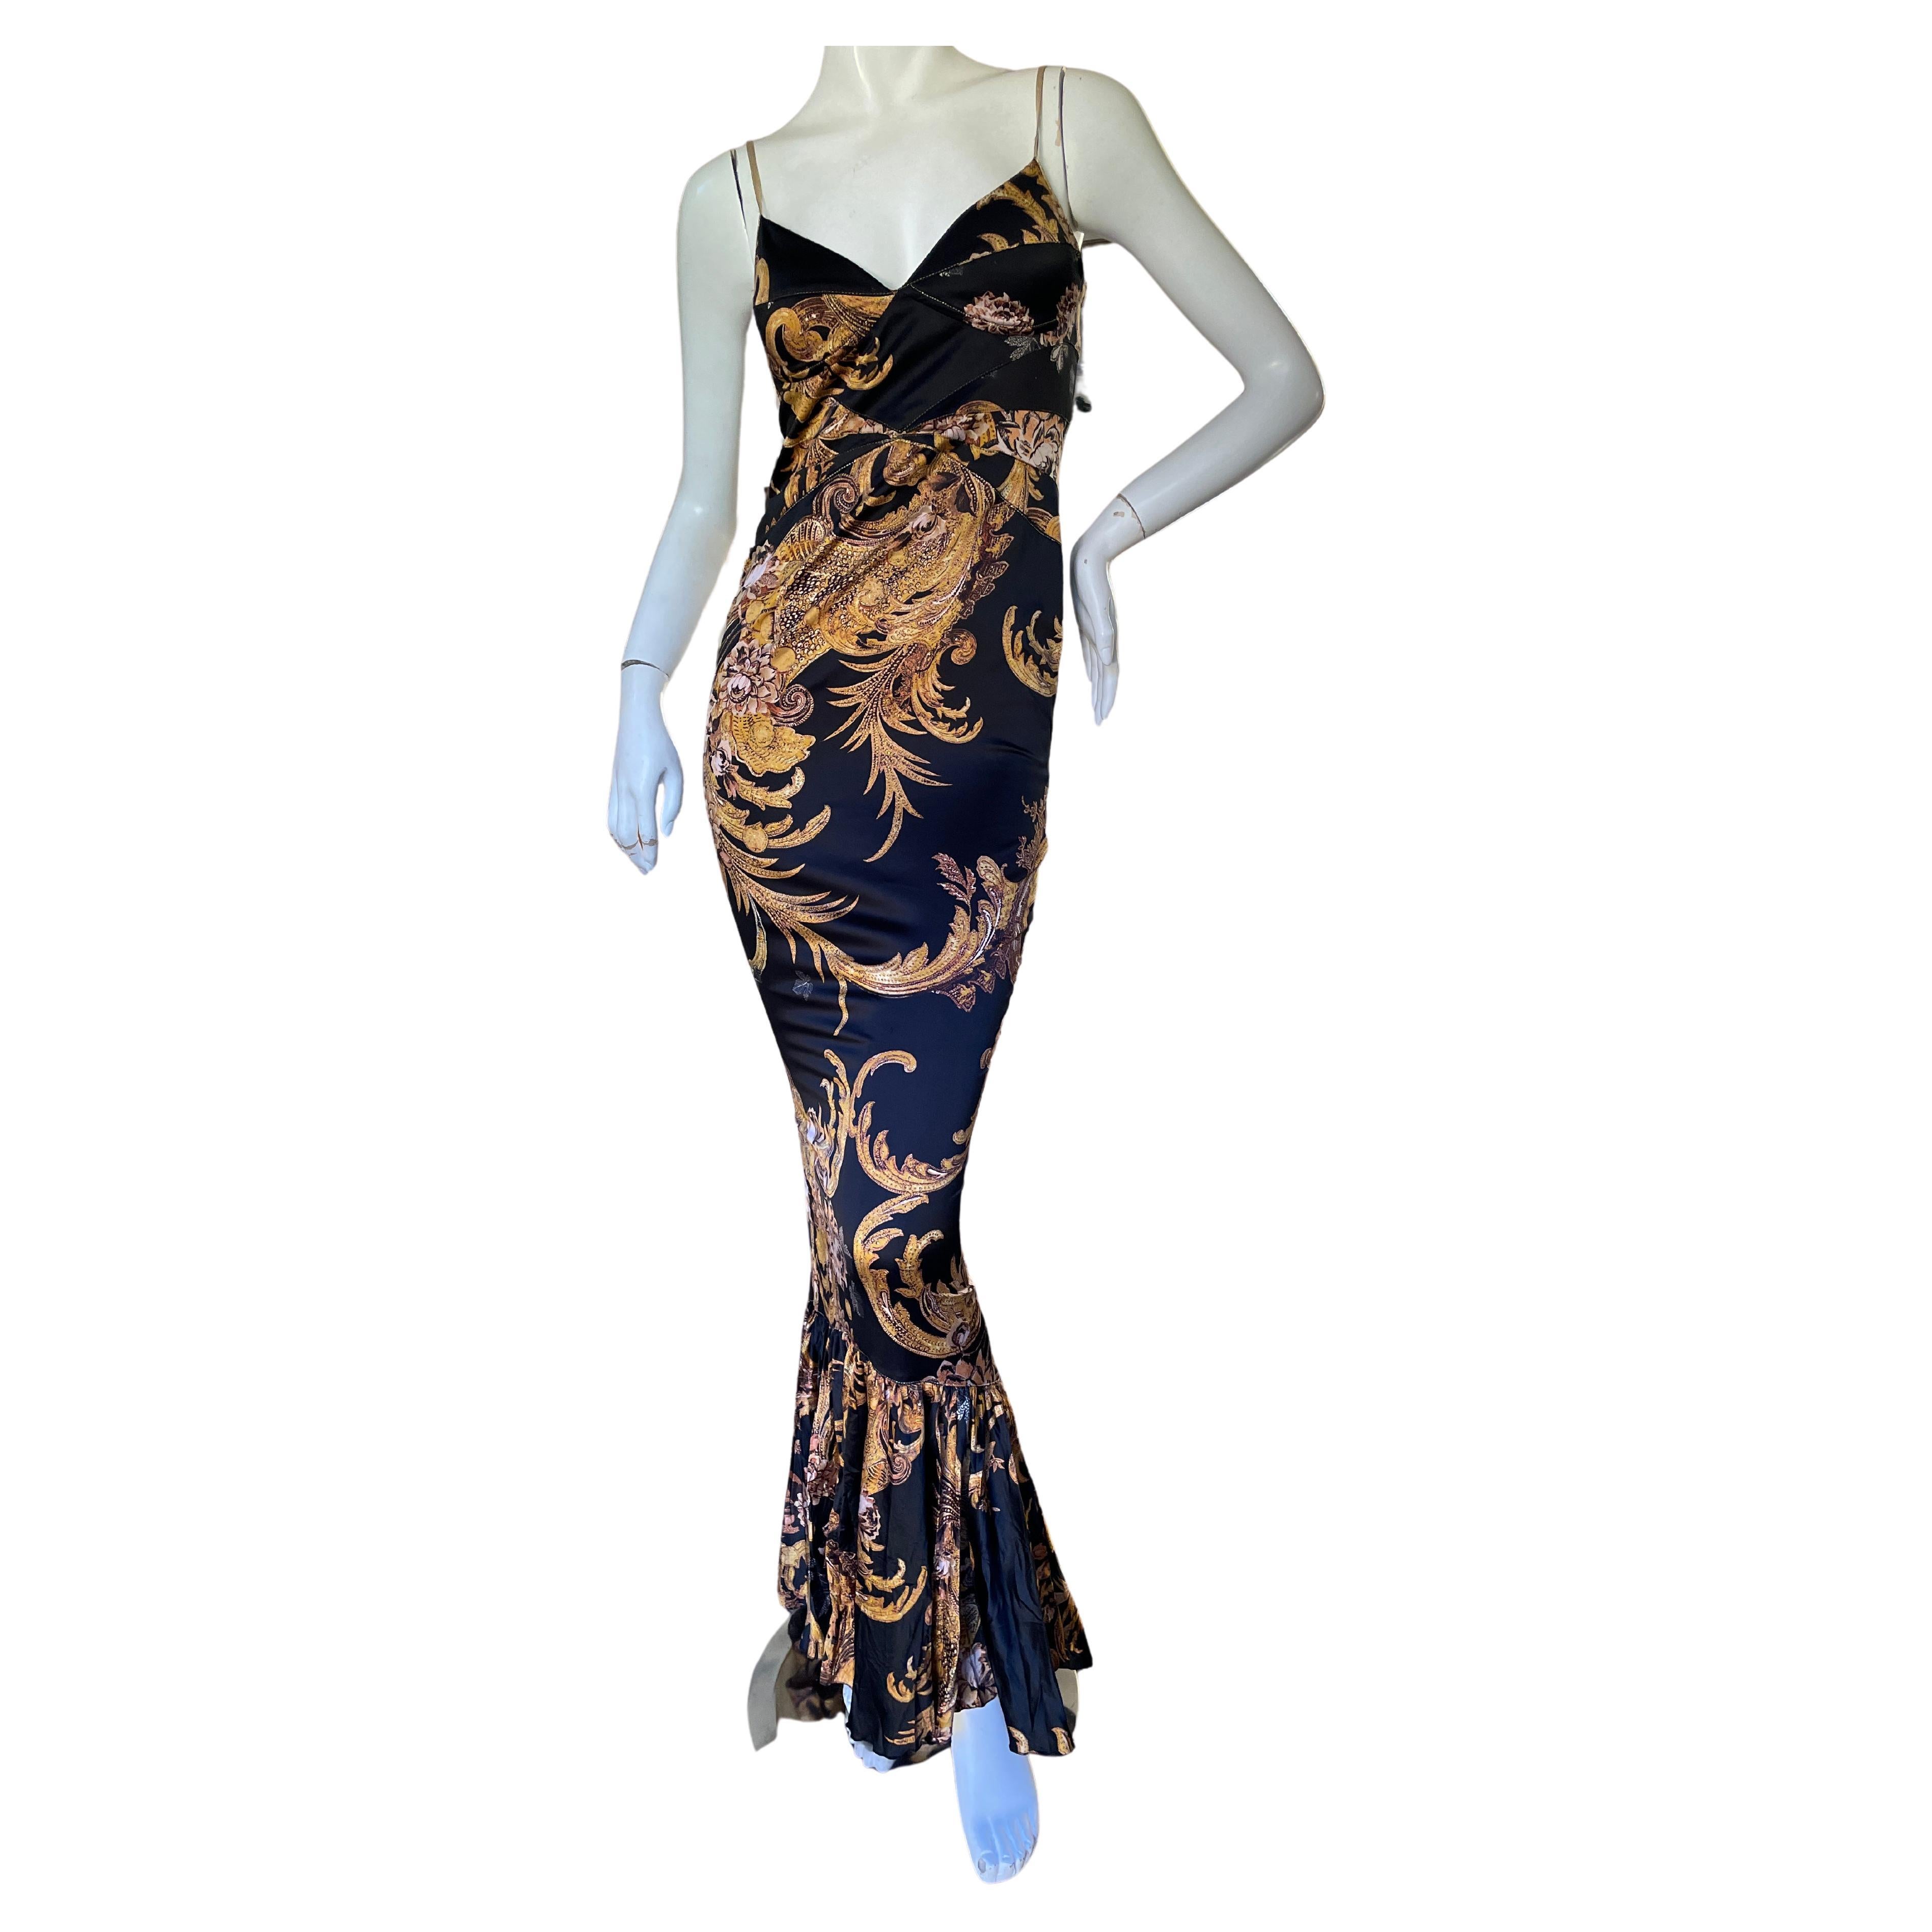 Roberto Cavalli for Just Cavalli Low Cut Baroque Pattern Fishtail Mermaid Dress